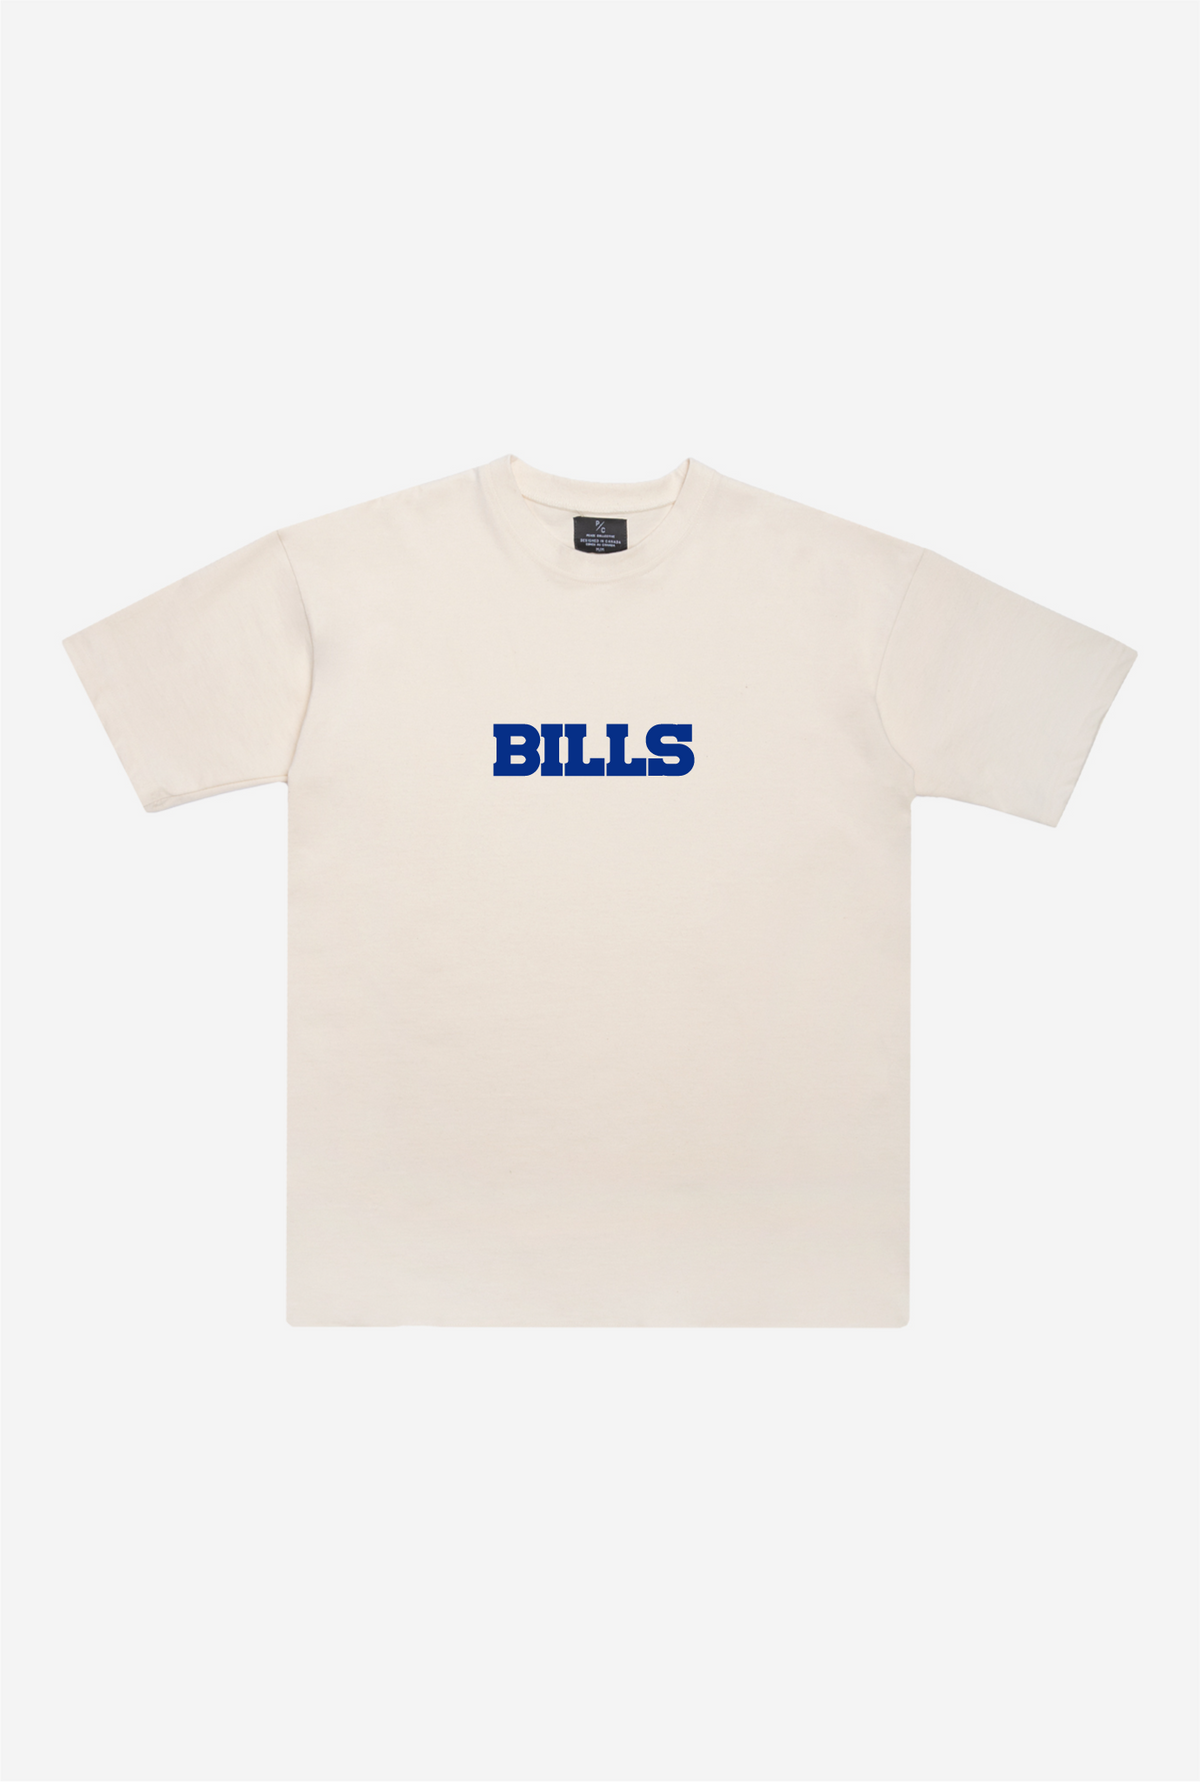 Buffalo Bills Heavyweight T-Shirt - Natural